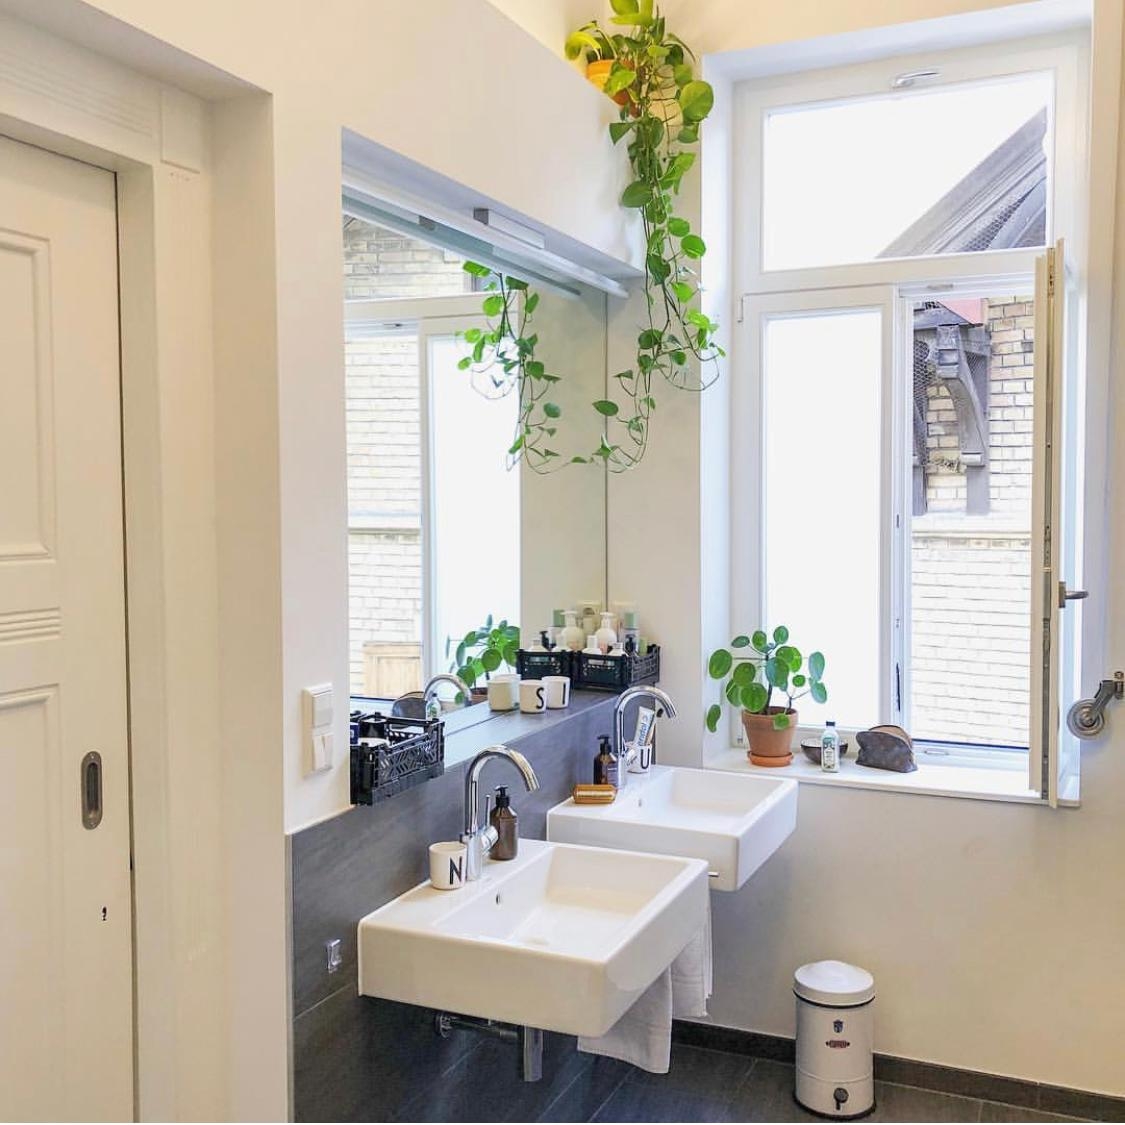 Unser Badezimmer..nicht spektakulär, dafür aber auch mit tollen hohen Wänden #livingchallenge #badidee #plants